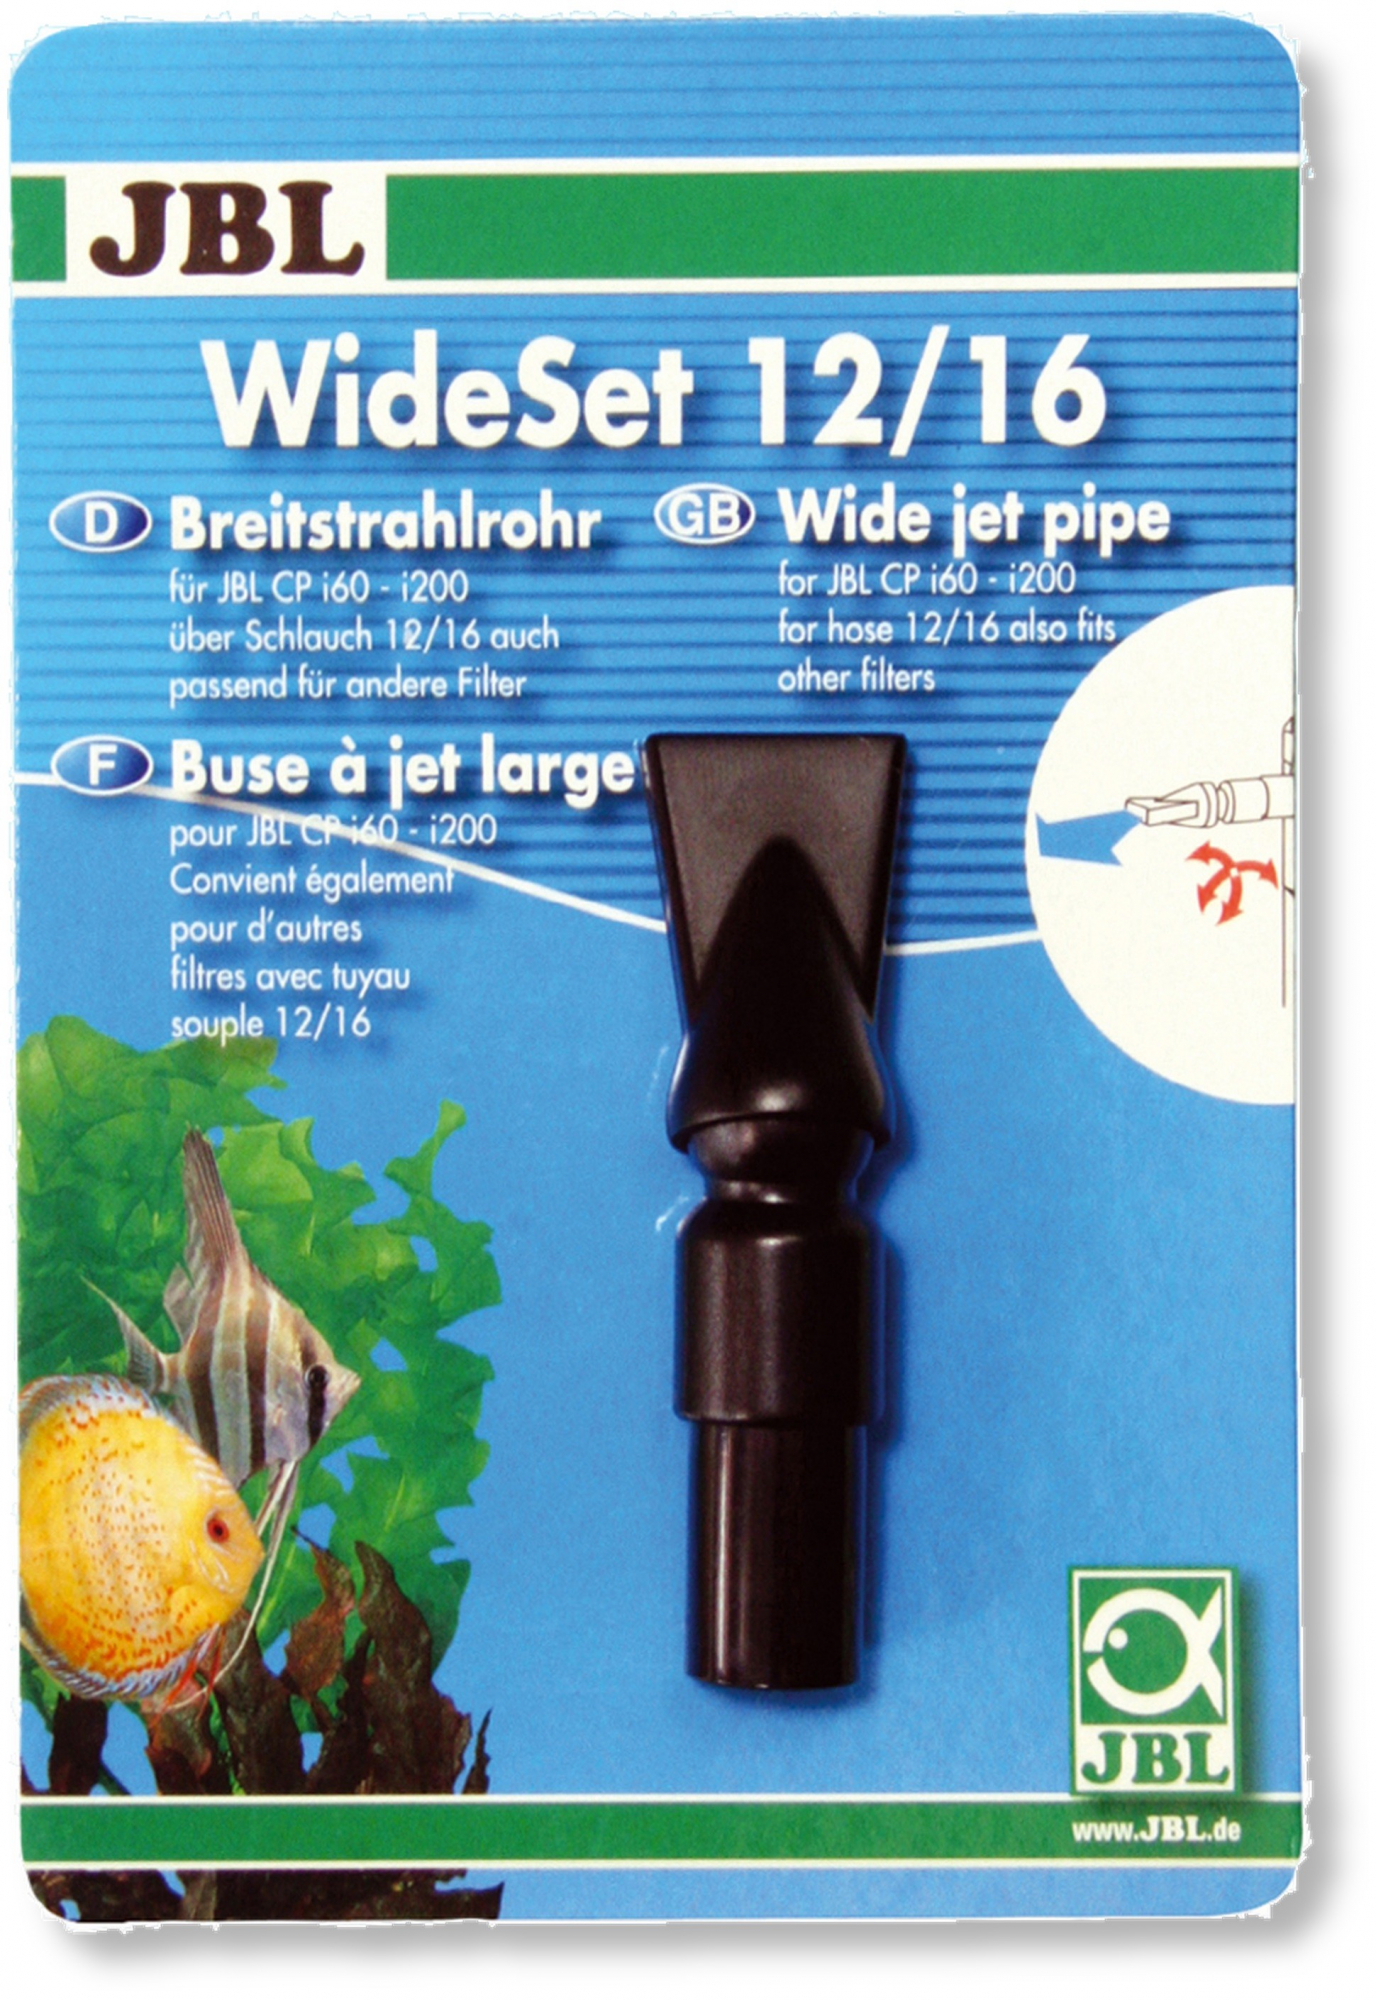 JBL WideSet 12/16, Breitstrahlrohr 12/16mm